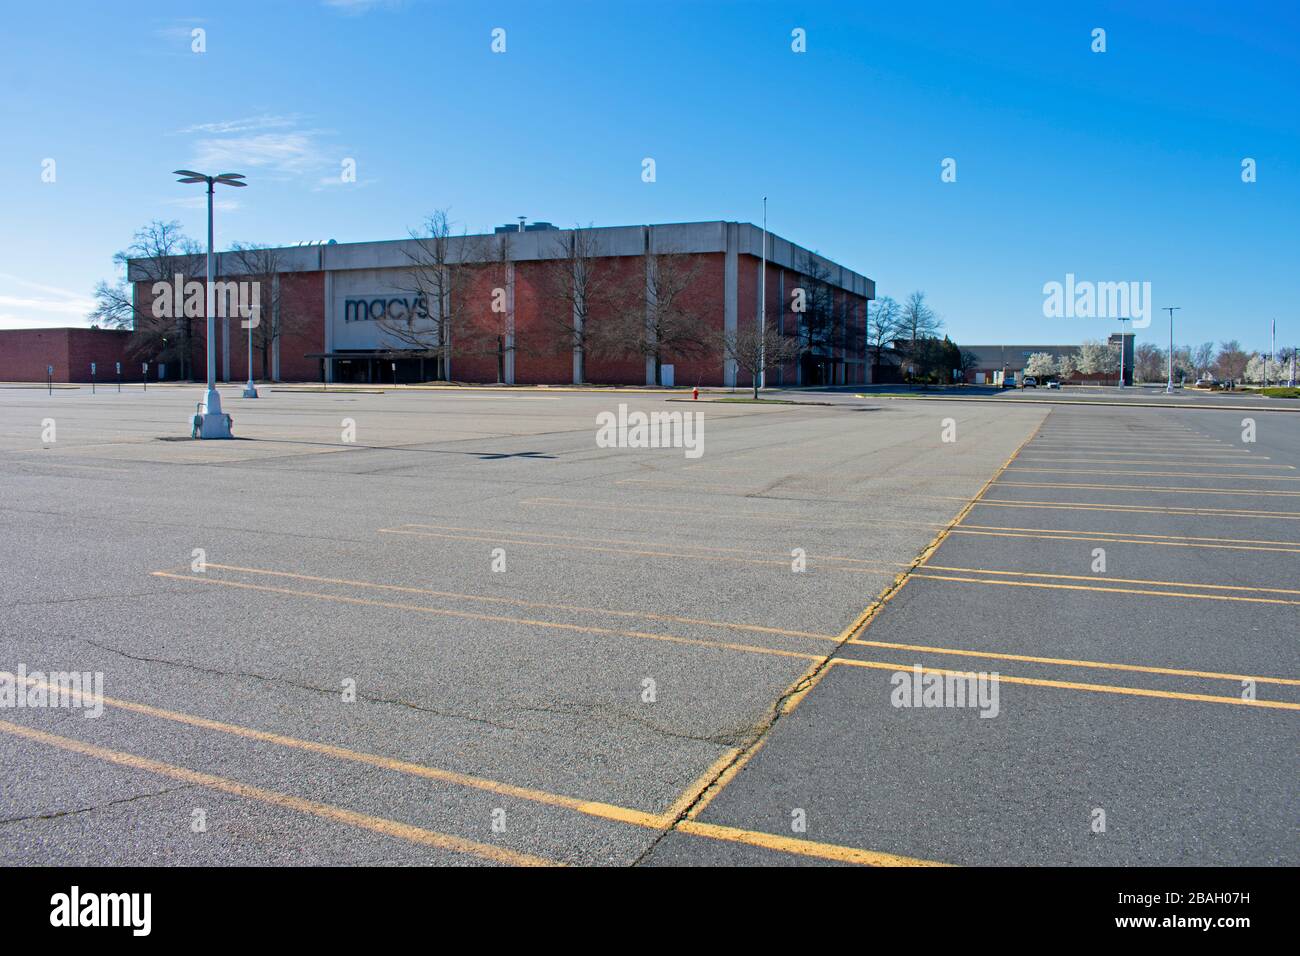 Parcheggio vuoto nel centro commerciale East Brunswick, New Jersey, il venerdì pomeriggio, marzo 27th, 2020, a seguito della chiusura dei negozi dovuta a Covid-19. Foto Stock